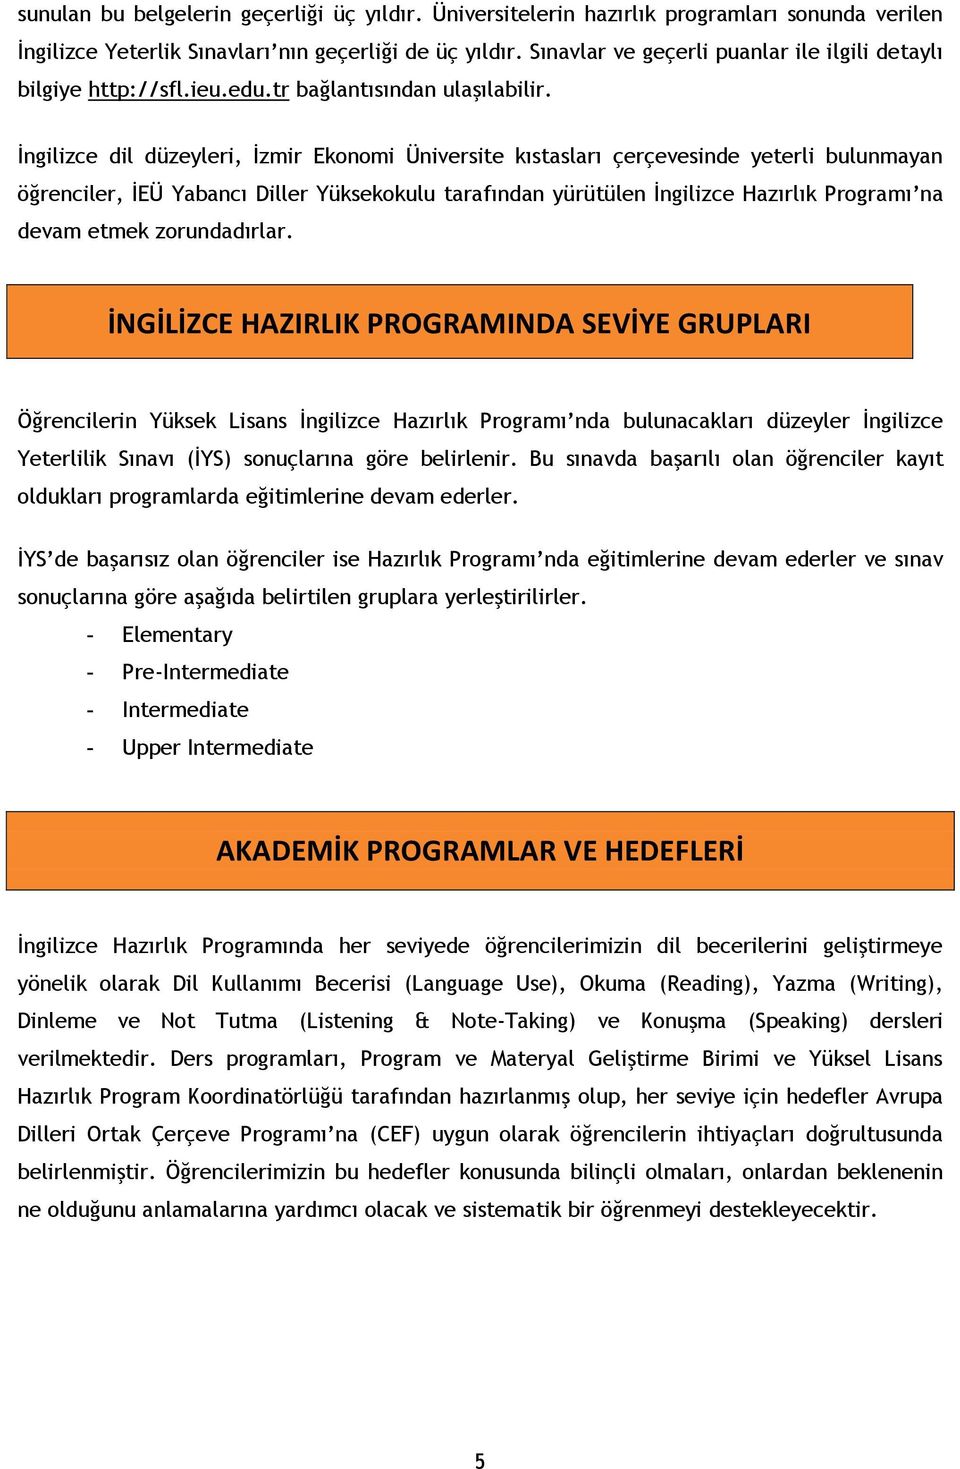 İngilizce dil düzeyleri, İzmir Ekonomi Üniversite kıstasları çerçevesinde yeterli bulunmayan öğrenciler, İEÜ Yabancı Diller Yüksekokulu tarafından yürütülen İngilizce Hazırlık Programı na devam etmek